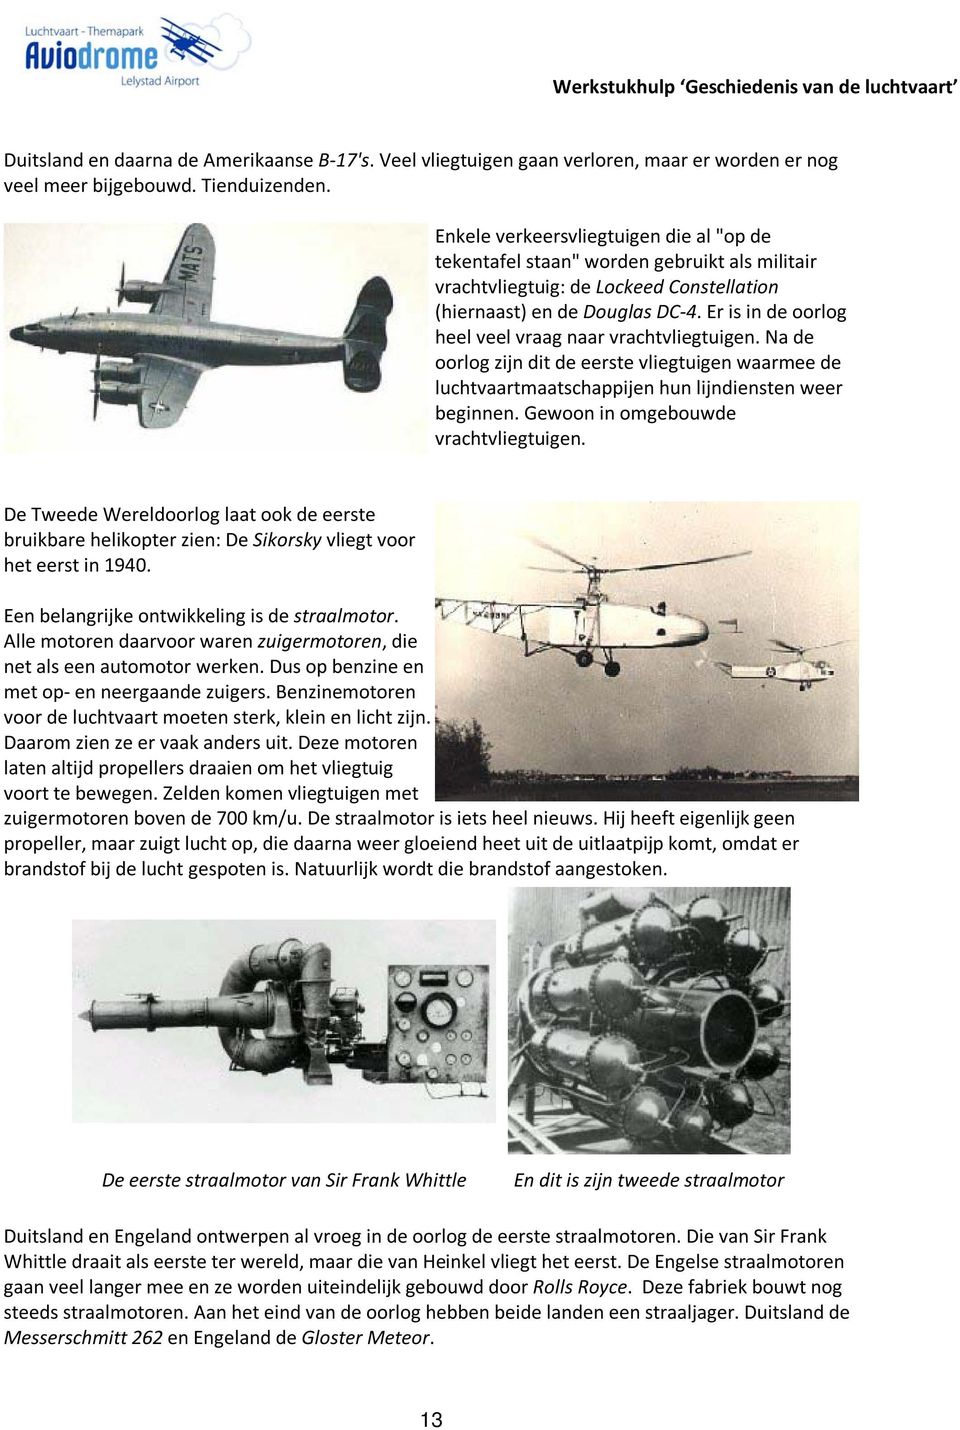 Er is in de oorlog heel veel vraag naar vrachtvliegtuigen. Na de oorlog zijn dit de eerste vliegtuigen waarmee de luchtvaartmaatschappijen hun lijndiensten weer beginnen.